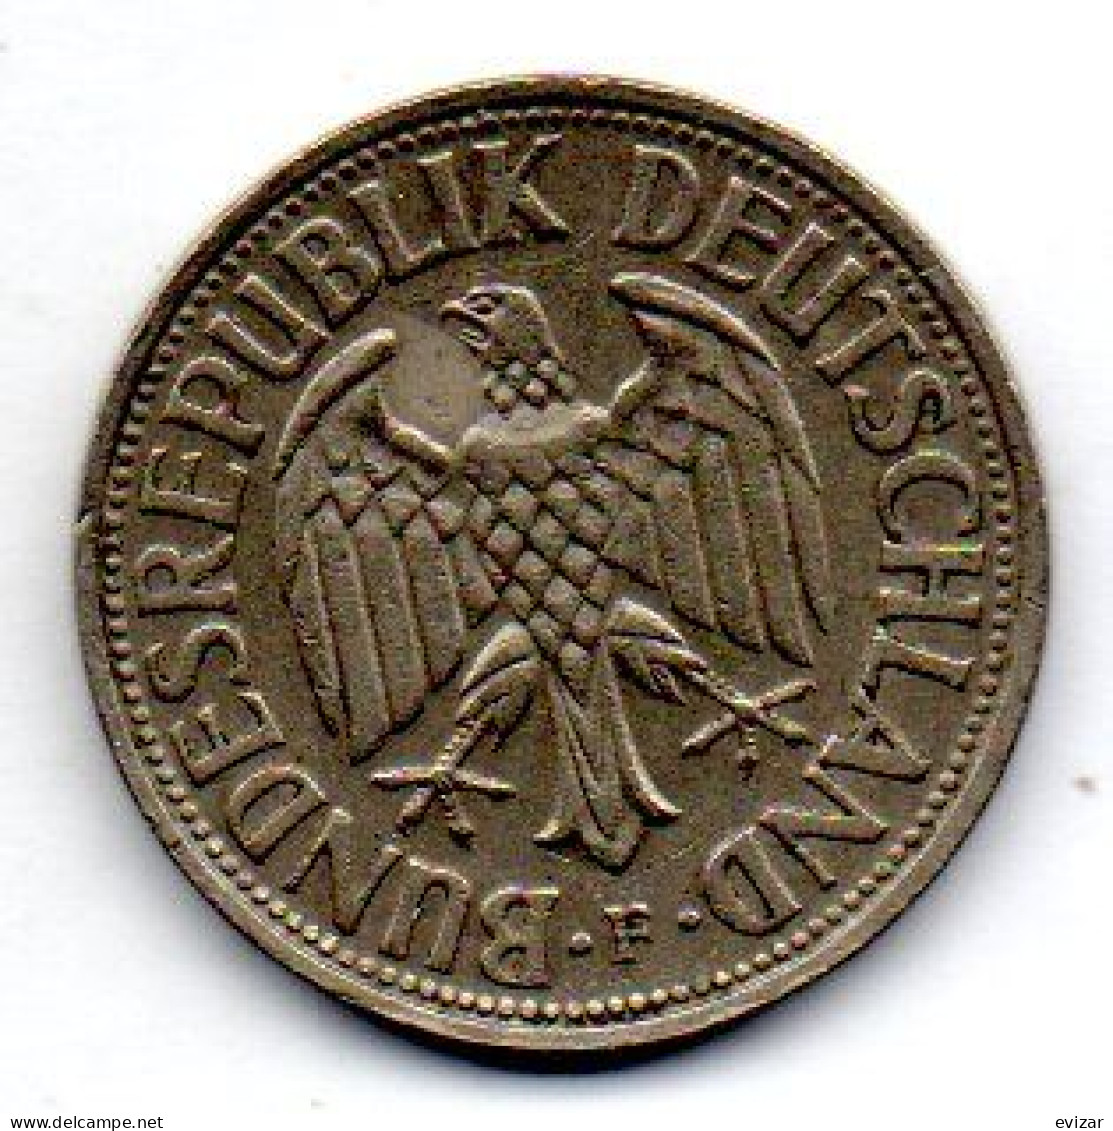 GERMANY - FEDERAL REPUBLIC, 1 Mark, Copper-Nickel, Year 1954-F, KM # 110 - 1 Mark